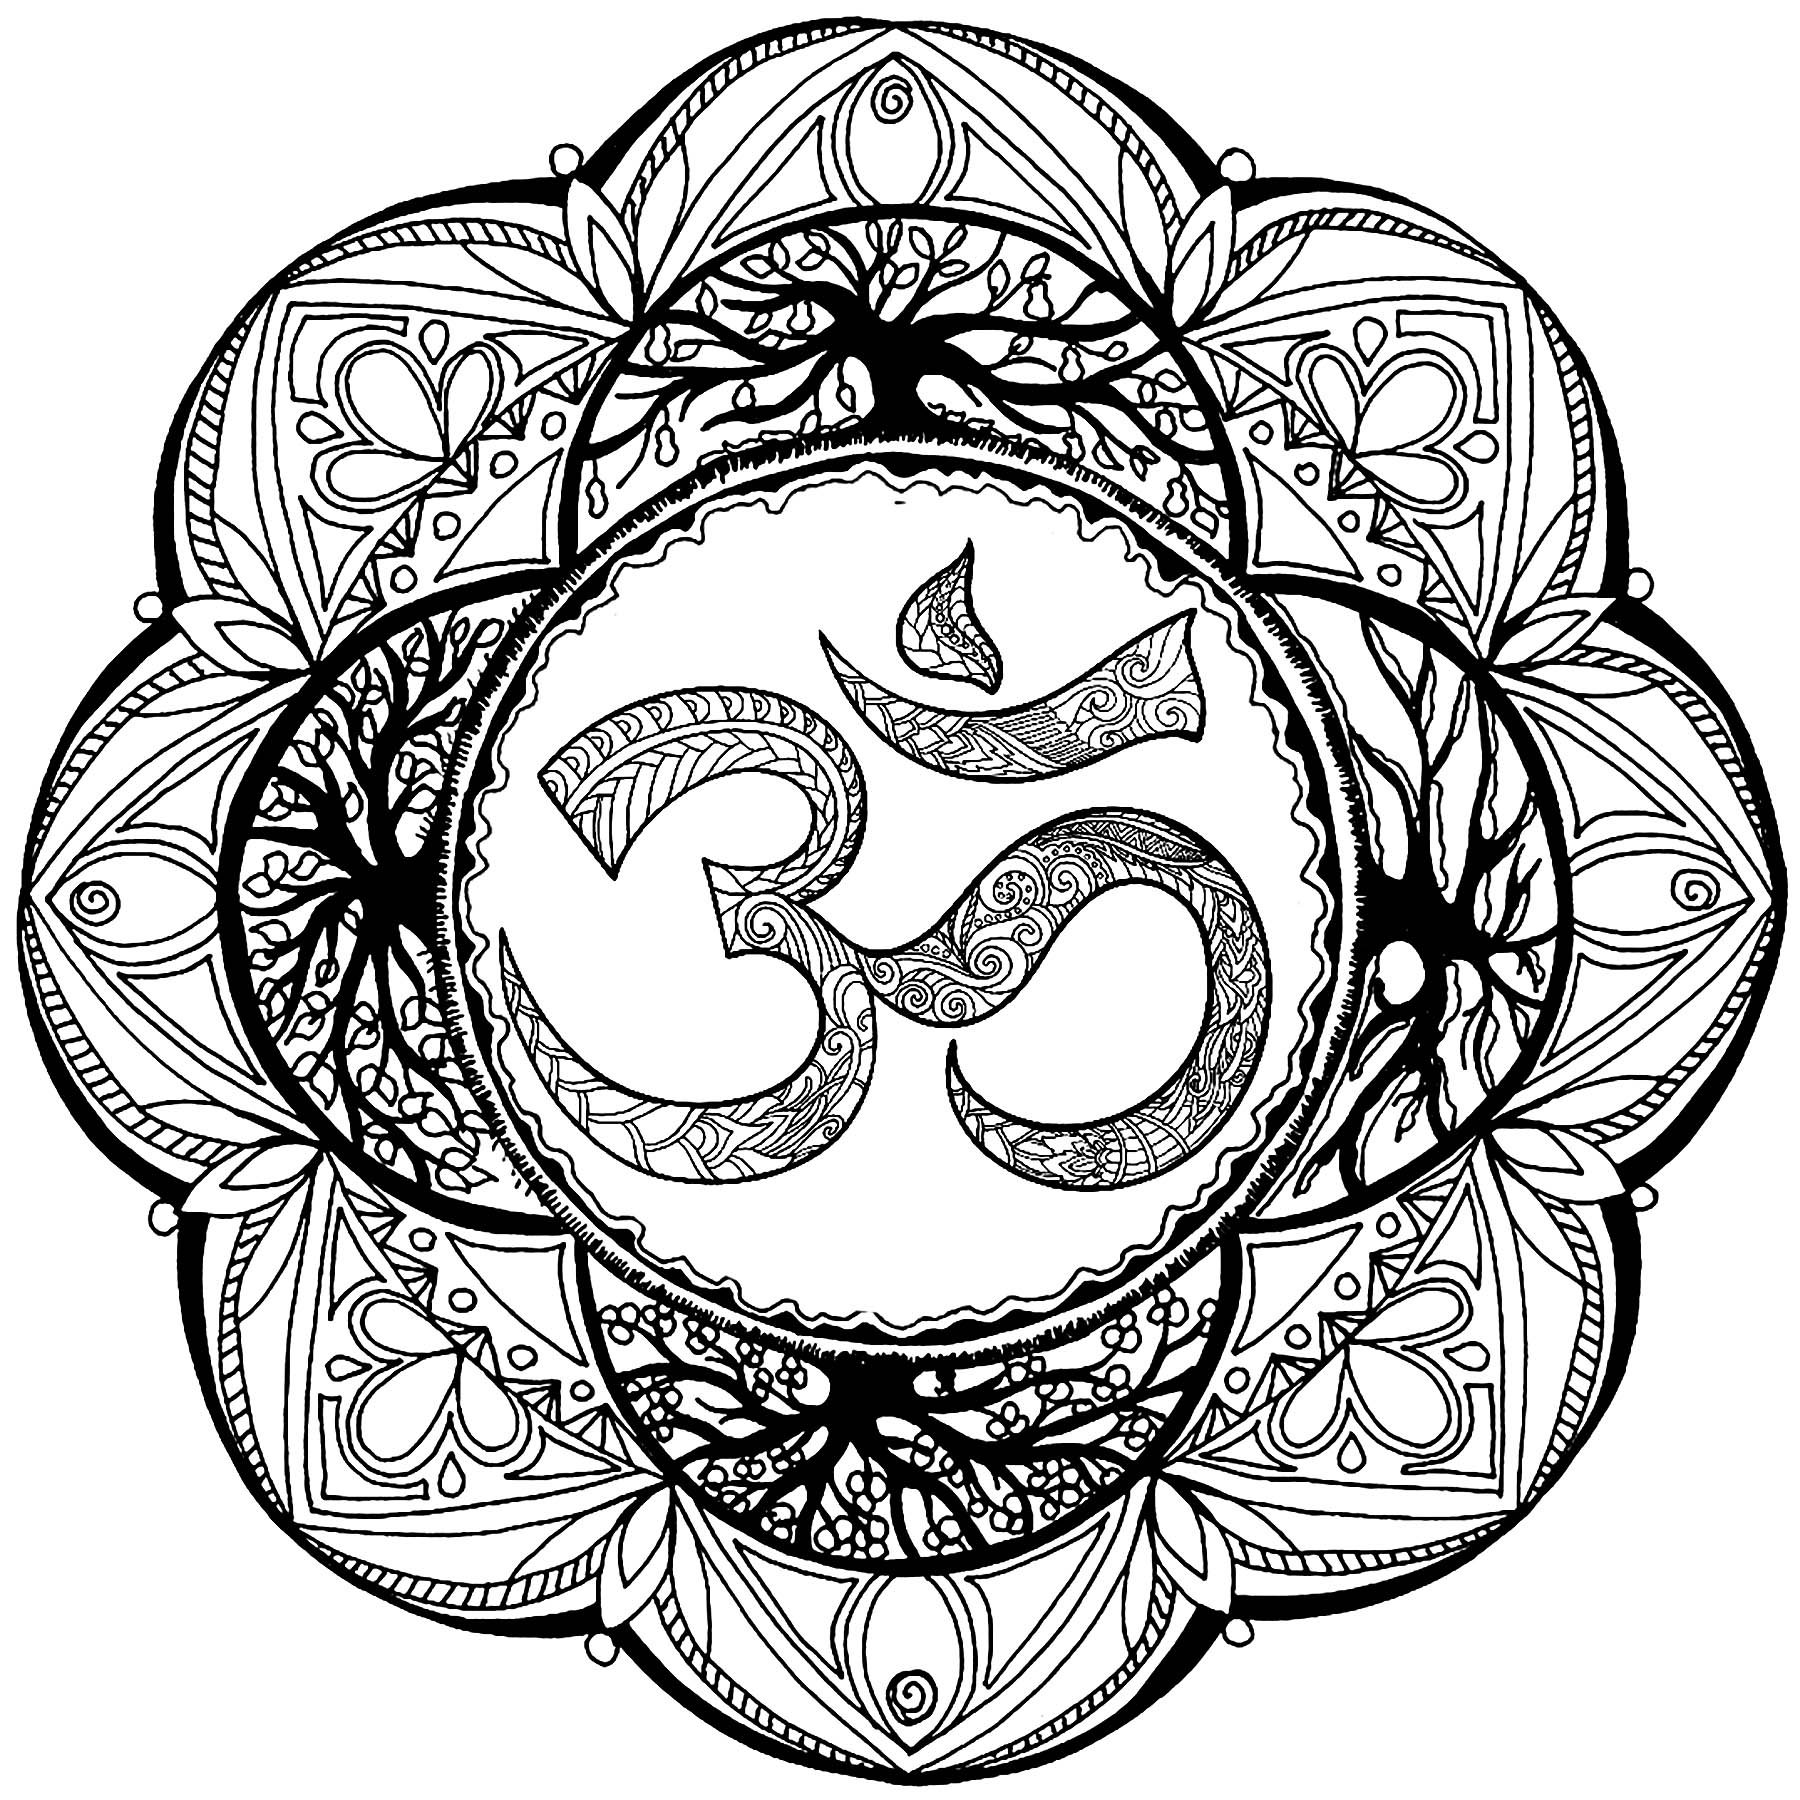 Mandala mit vielen Details und dem Om-Symbol in der Mitte